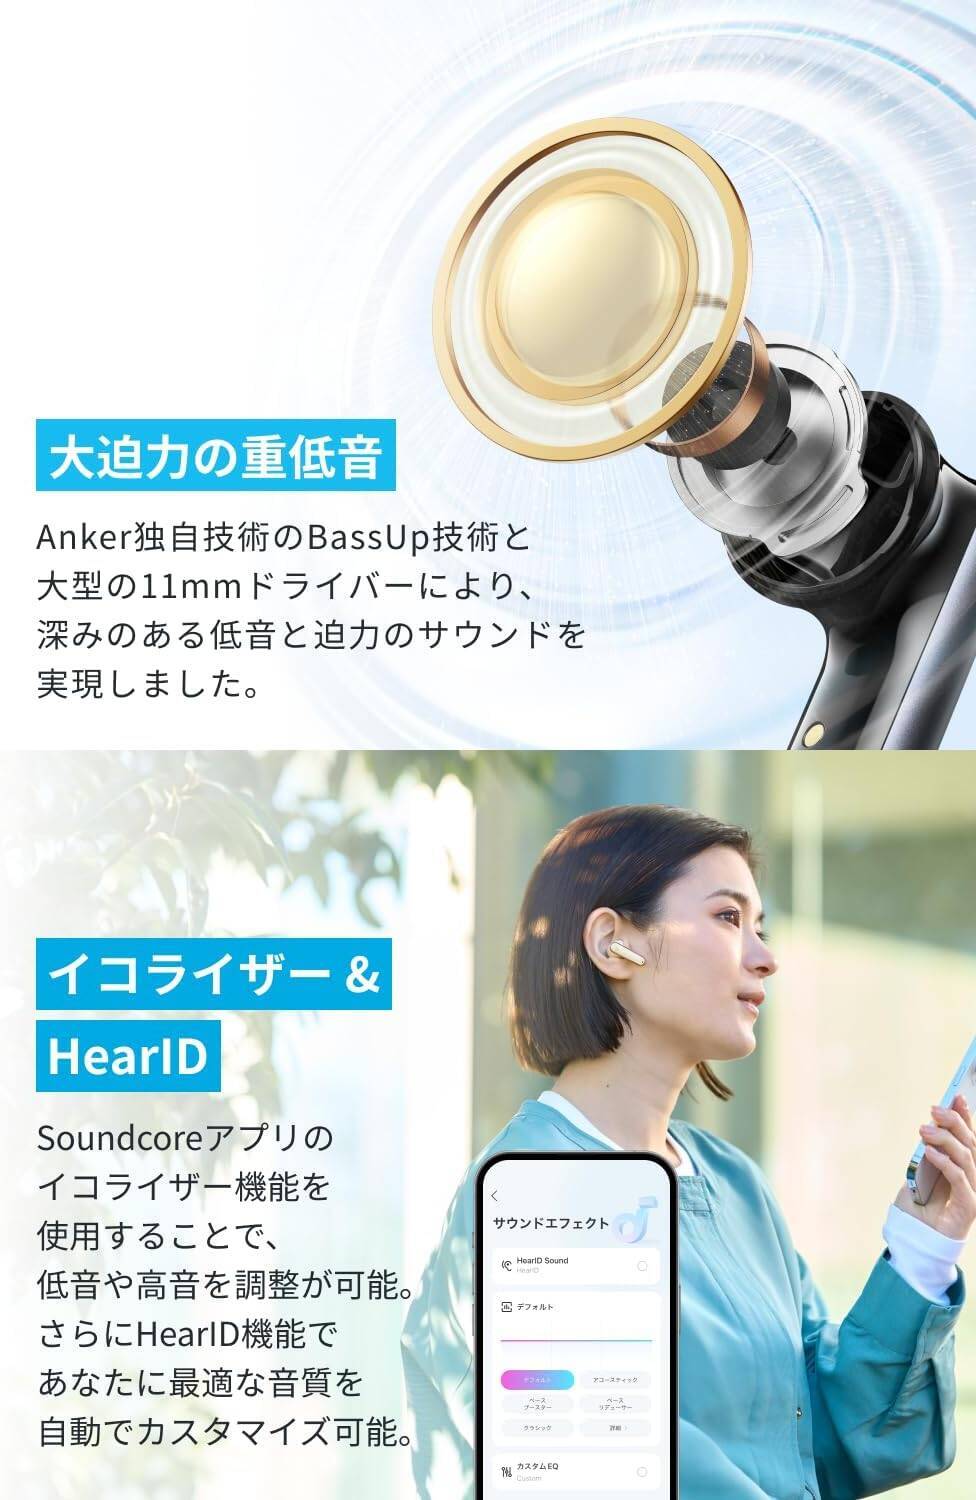 【新製品】人気NCワイヤレスの次世代機「Anker Soundcore P40i」が発売